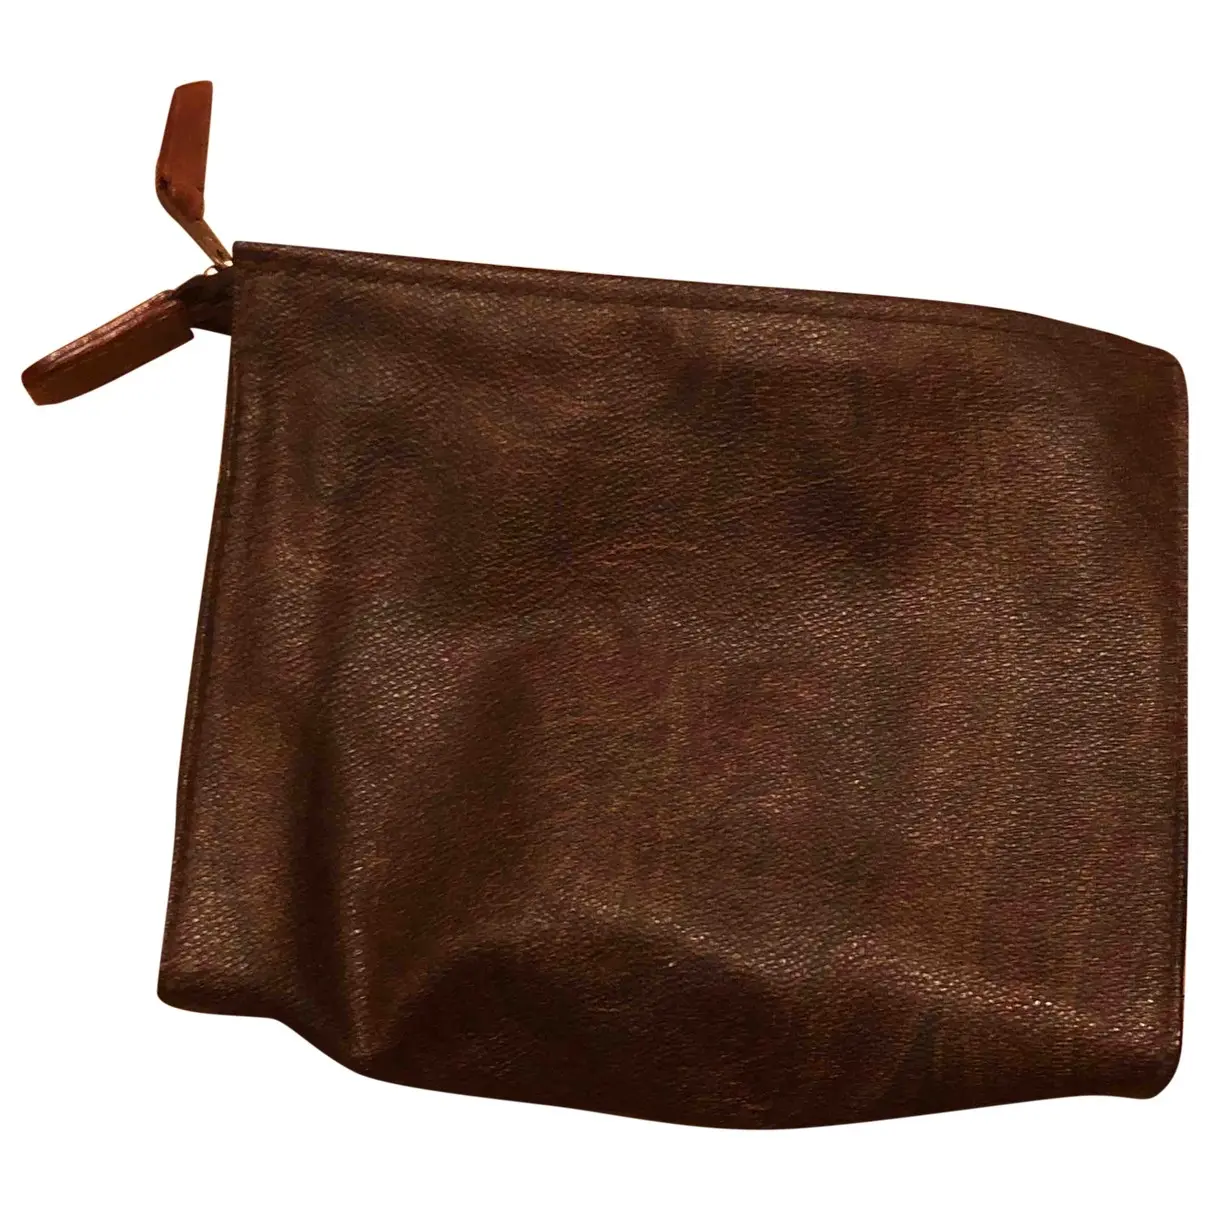 Leather clutch bag Etro